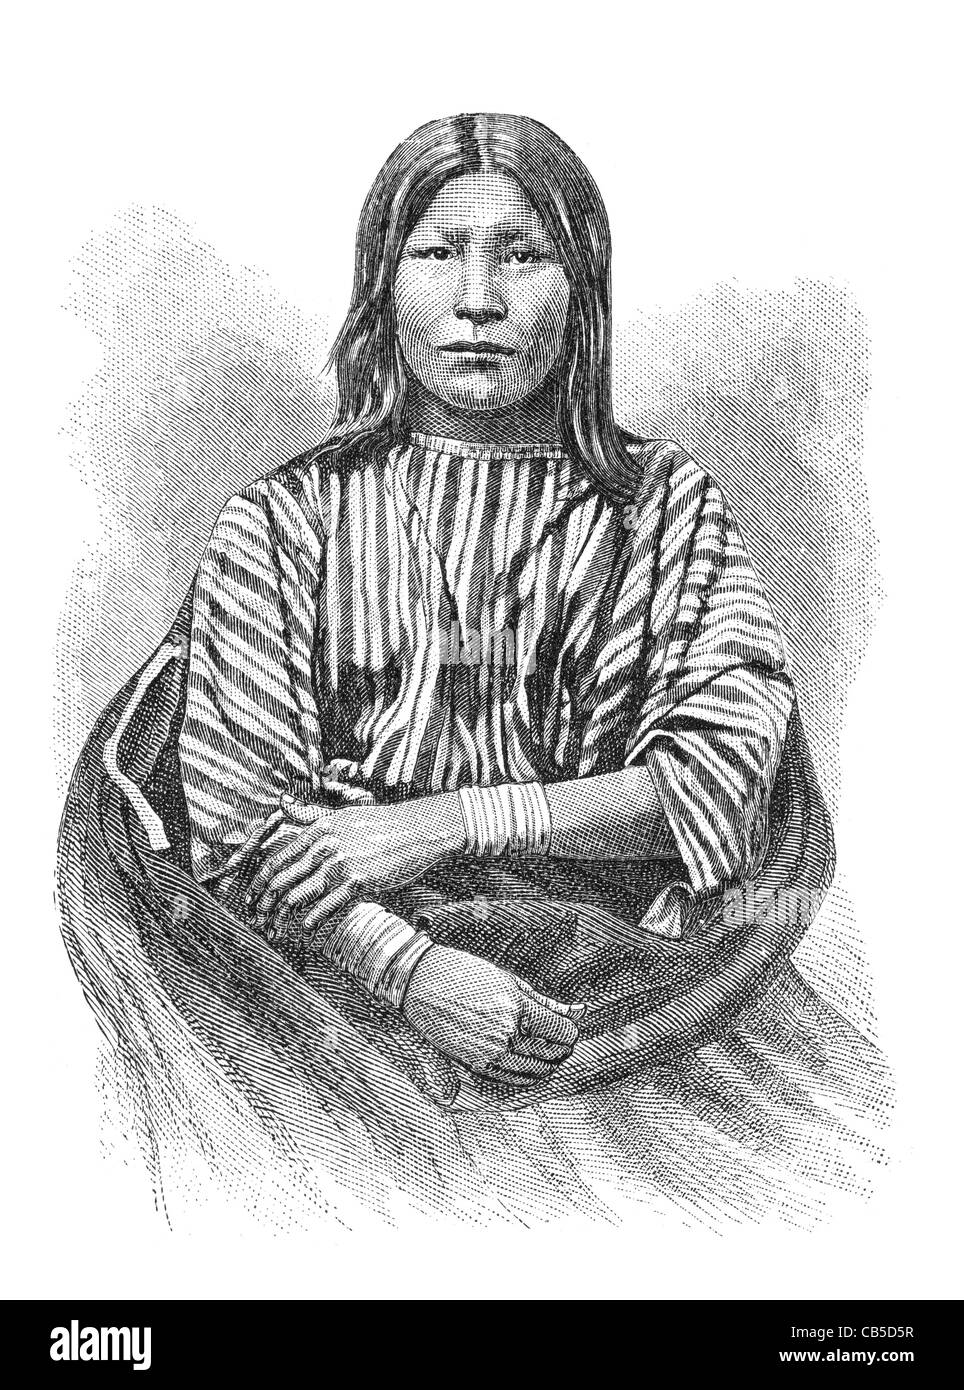 Les Arapaho native American nommé Feather Head. Banque D'Images